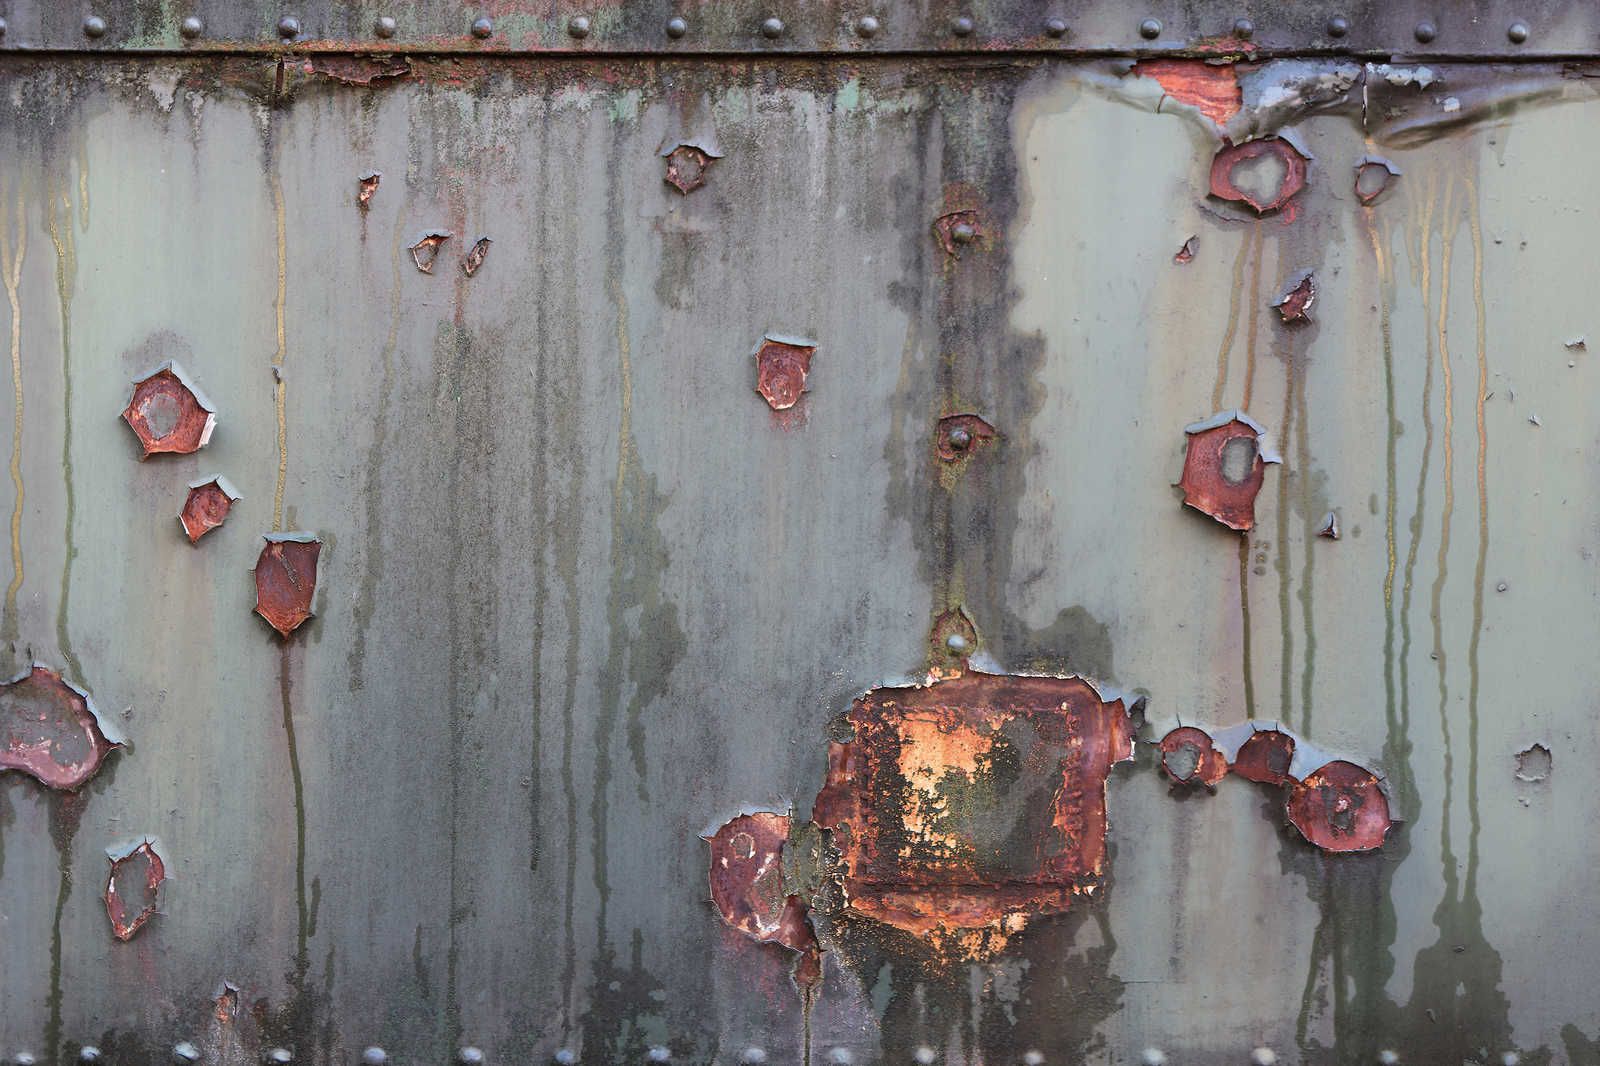             Pared de metal - Pintura sobre lienzo Industrial con aspecto oxidado y usado - 0,90 m x 0,60 m
        